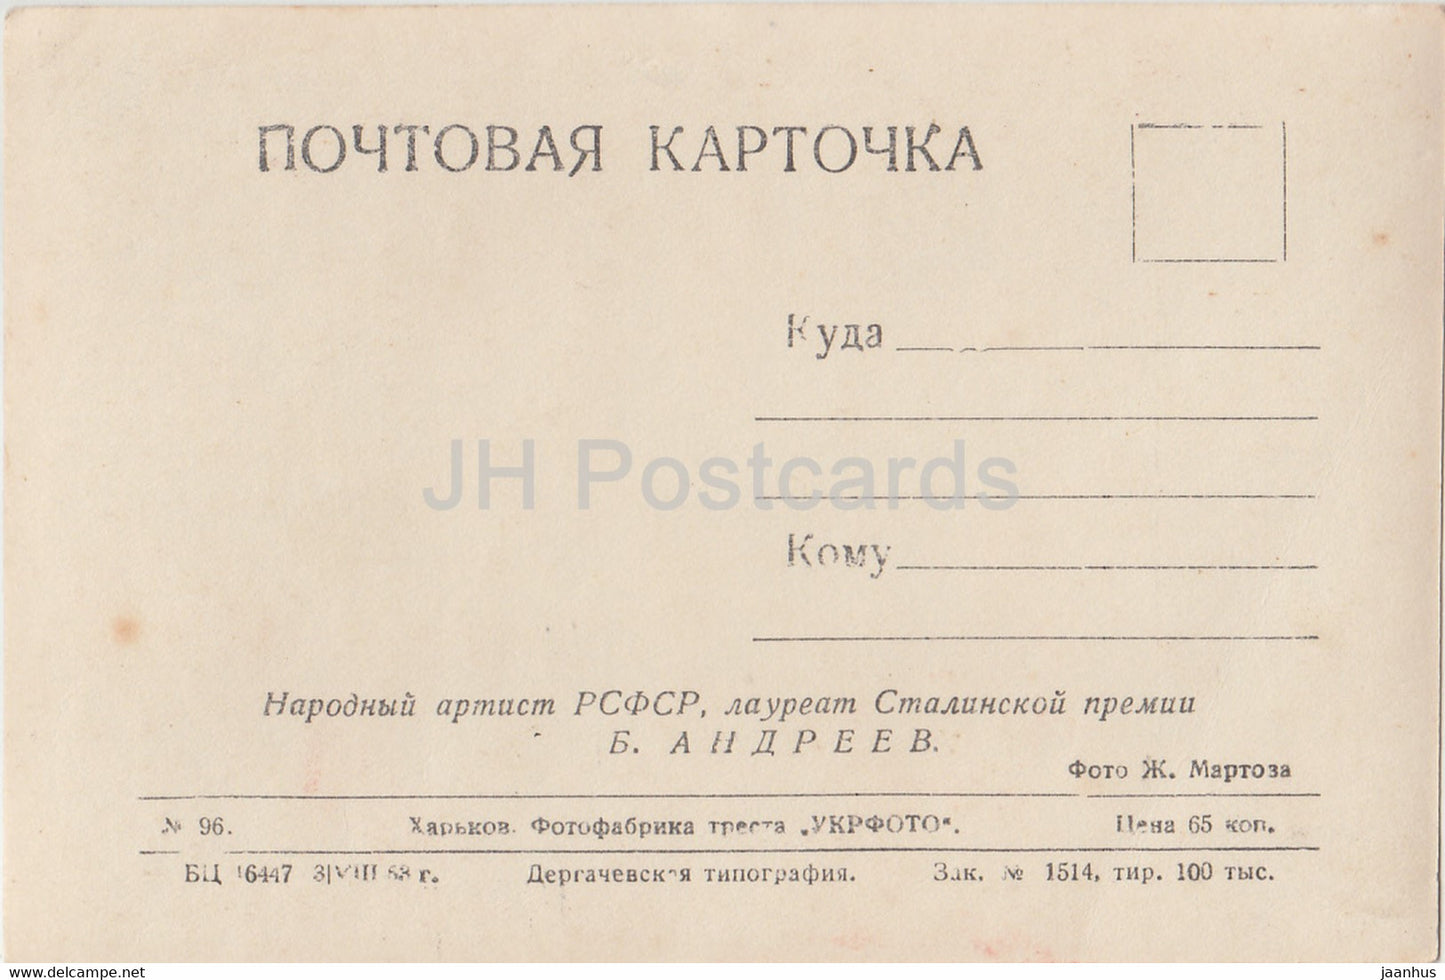 Soviet actor Boris Andreyev - Film - Movie - 1953 - old postcard - Russia USSR - unused